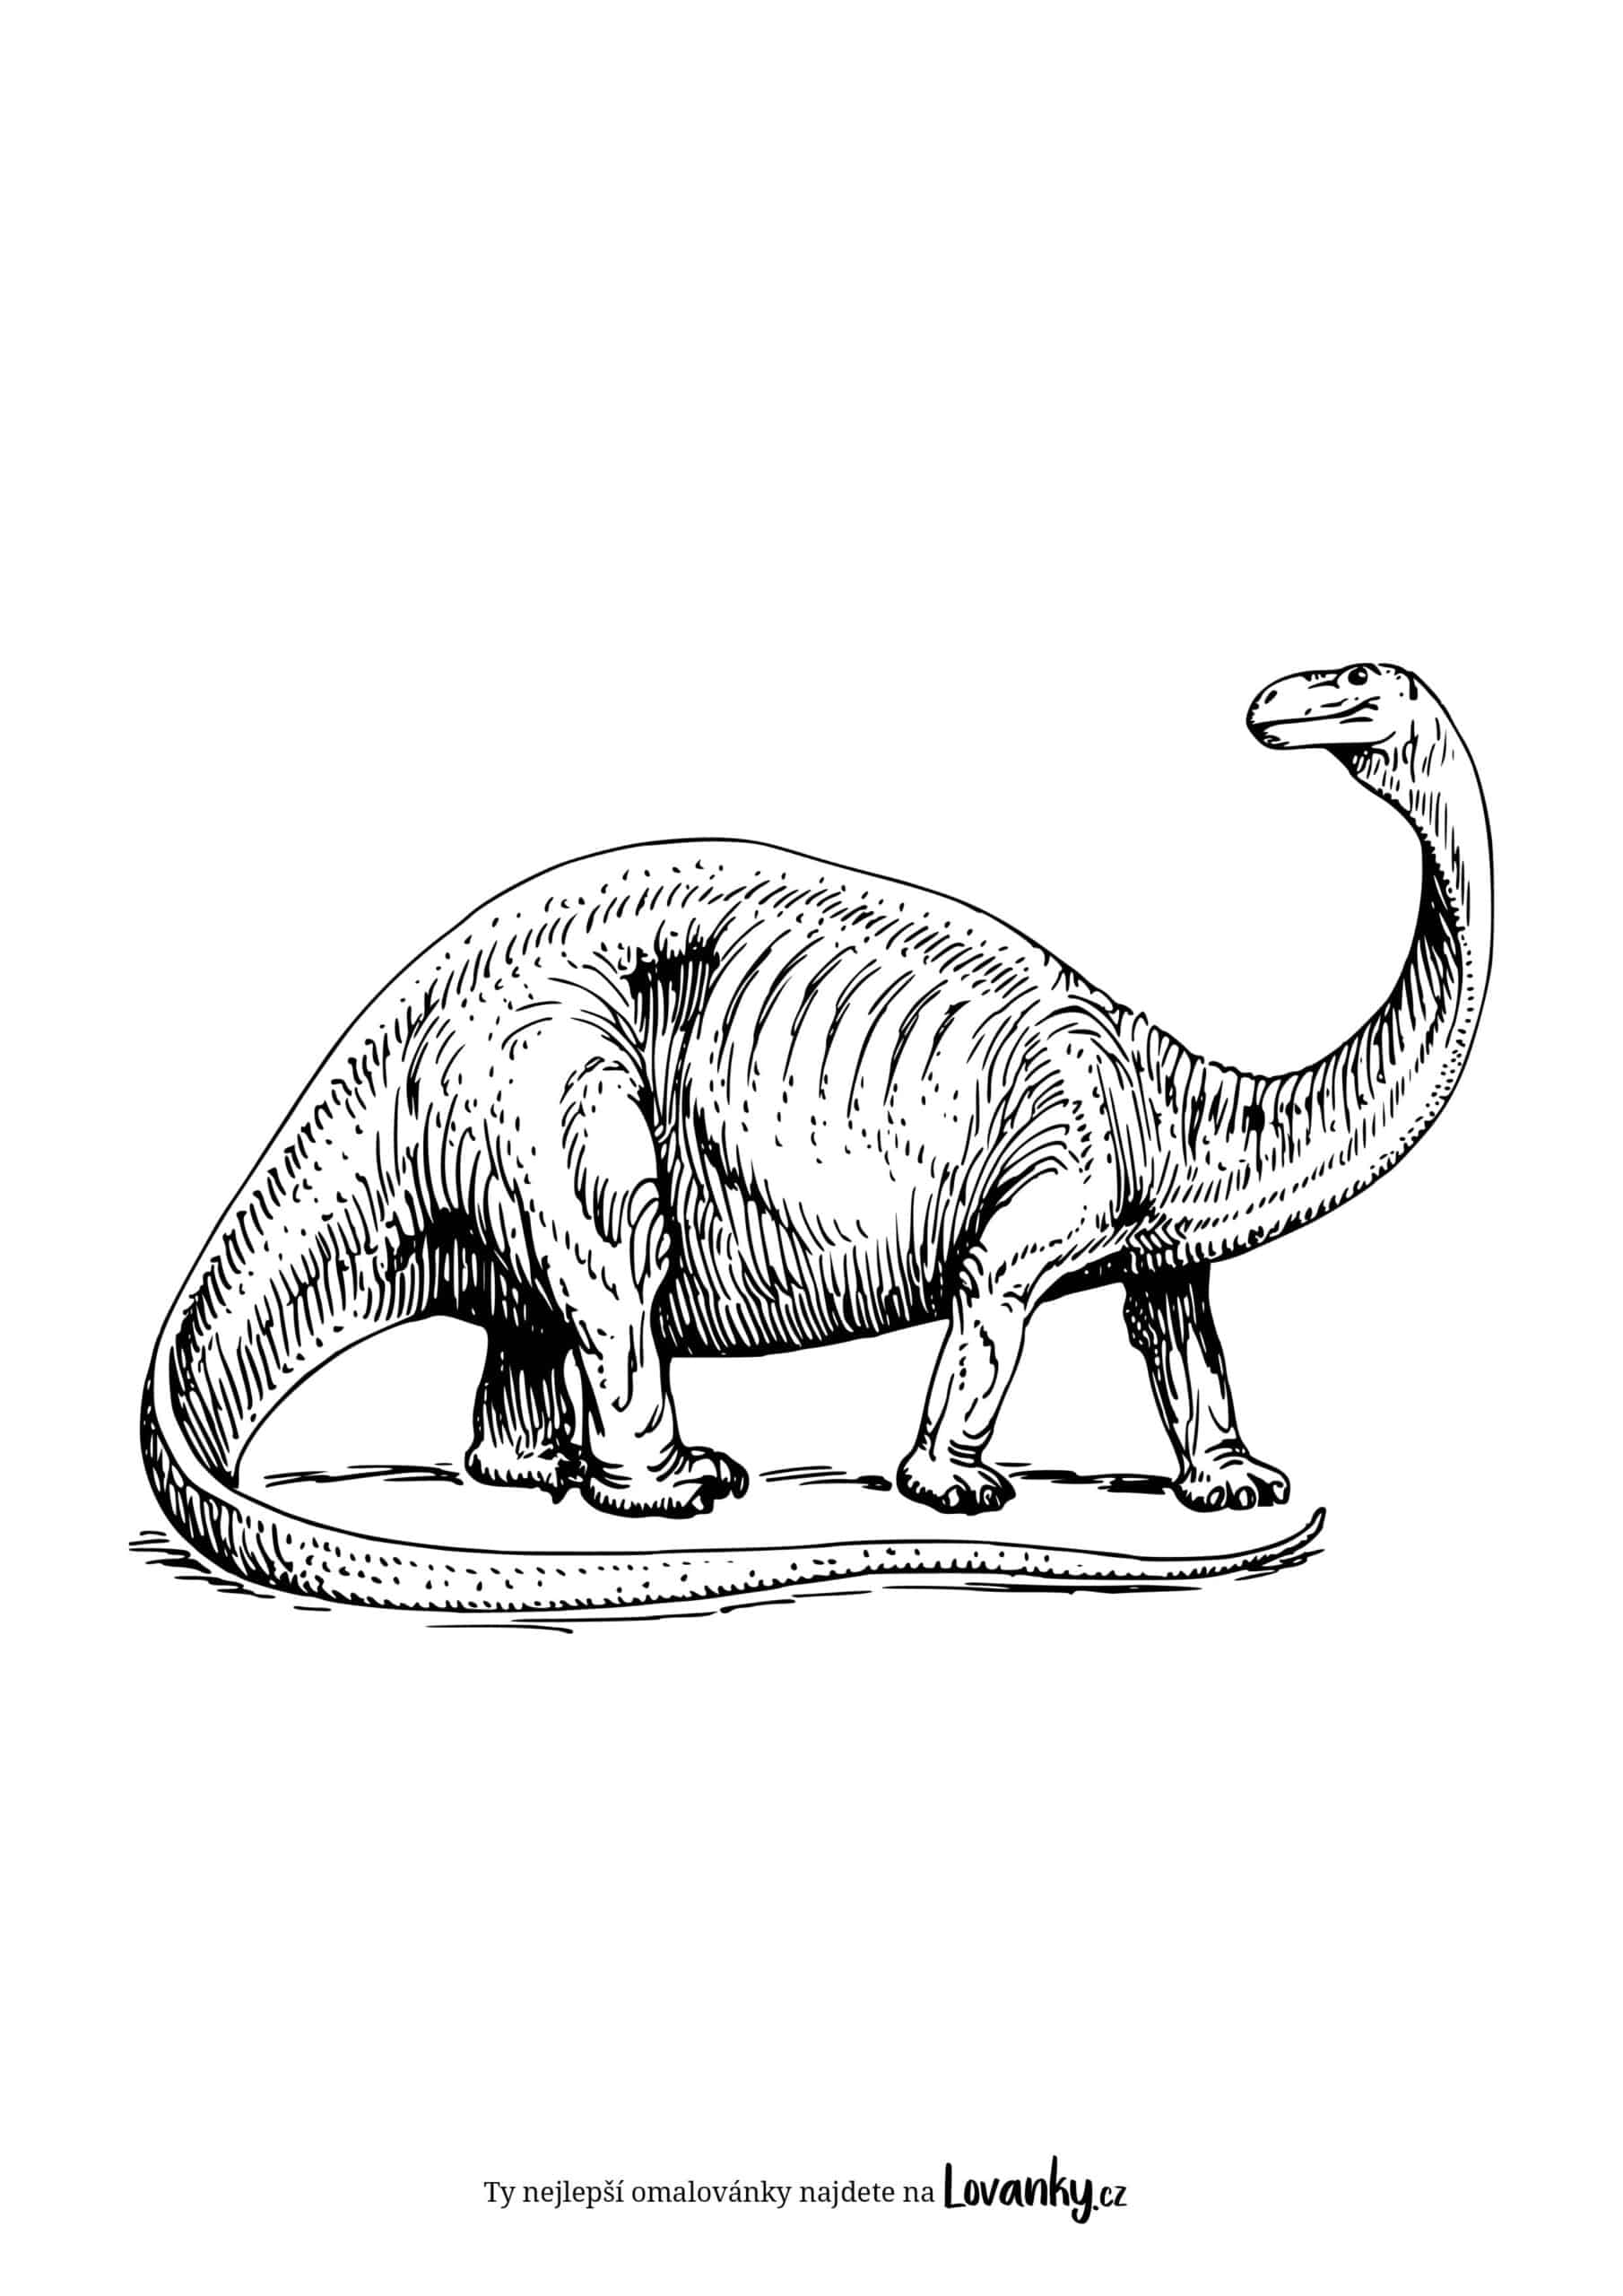 Brachiosaurus omalovánky